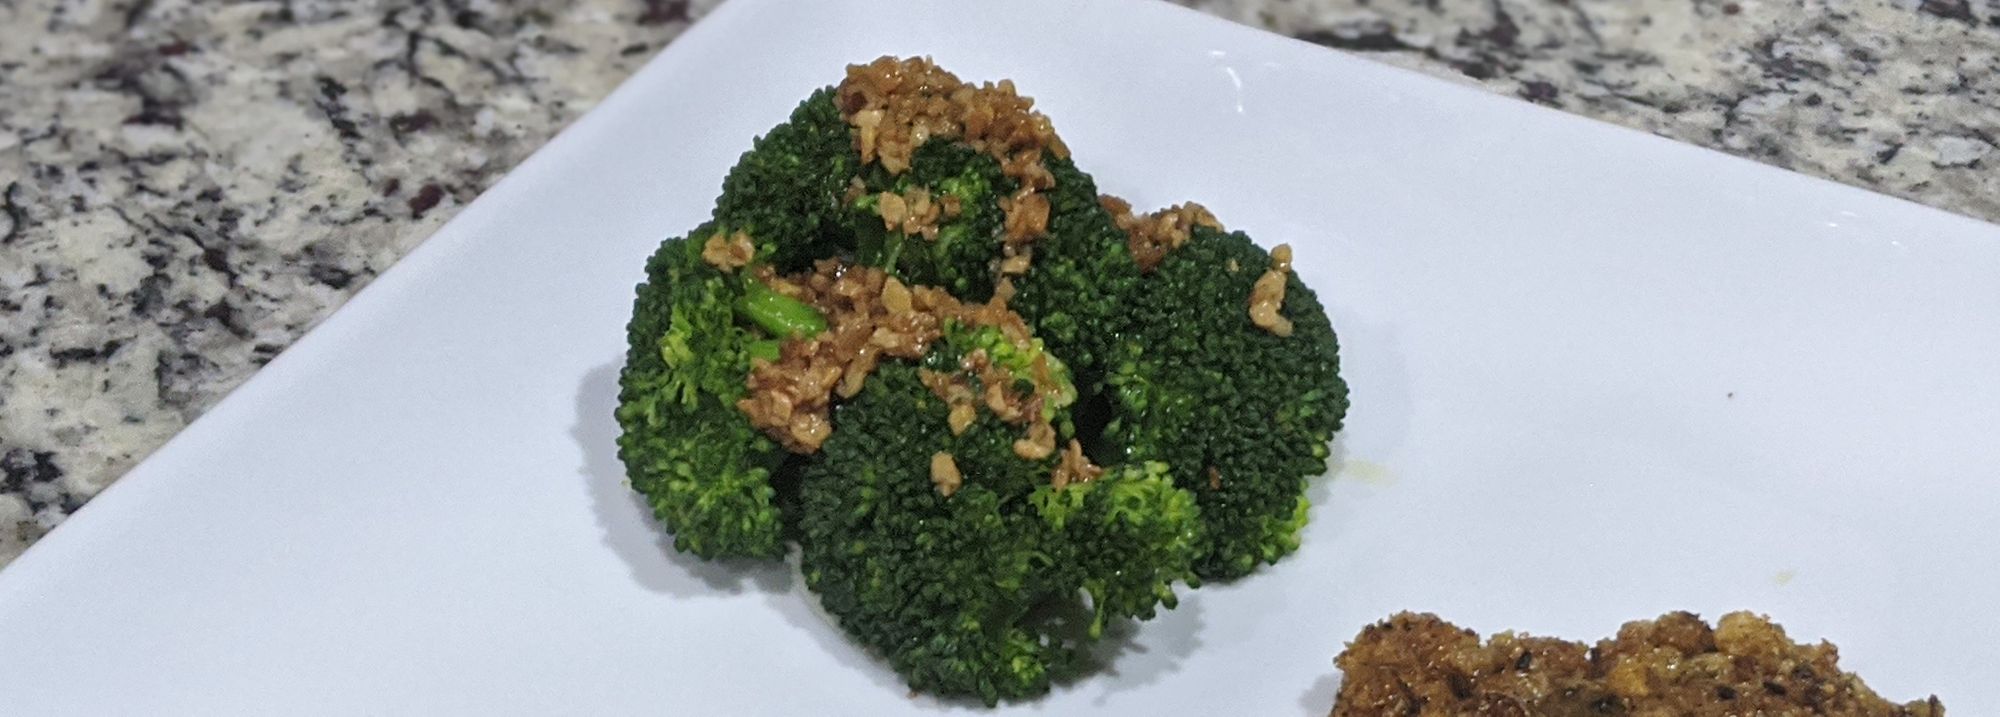 Broccoli con burro chiarificato e aglio arrostito in padella